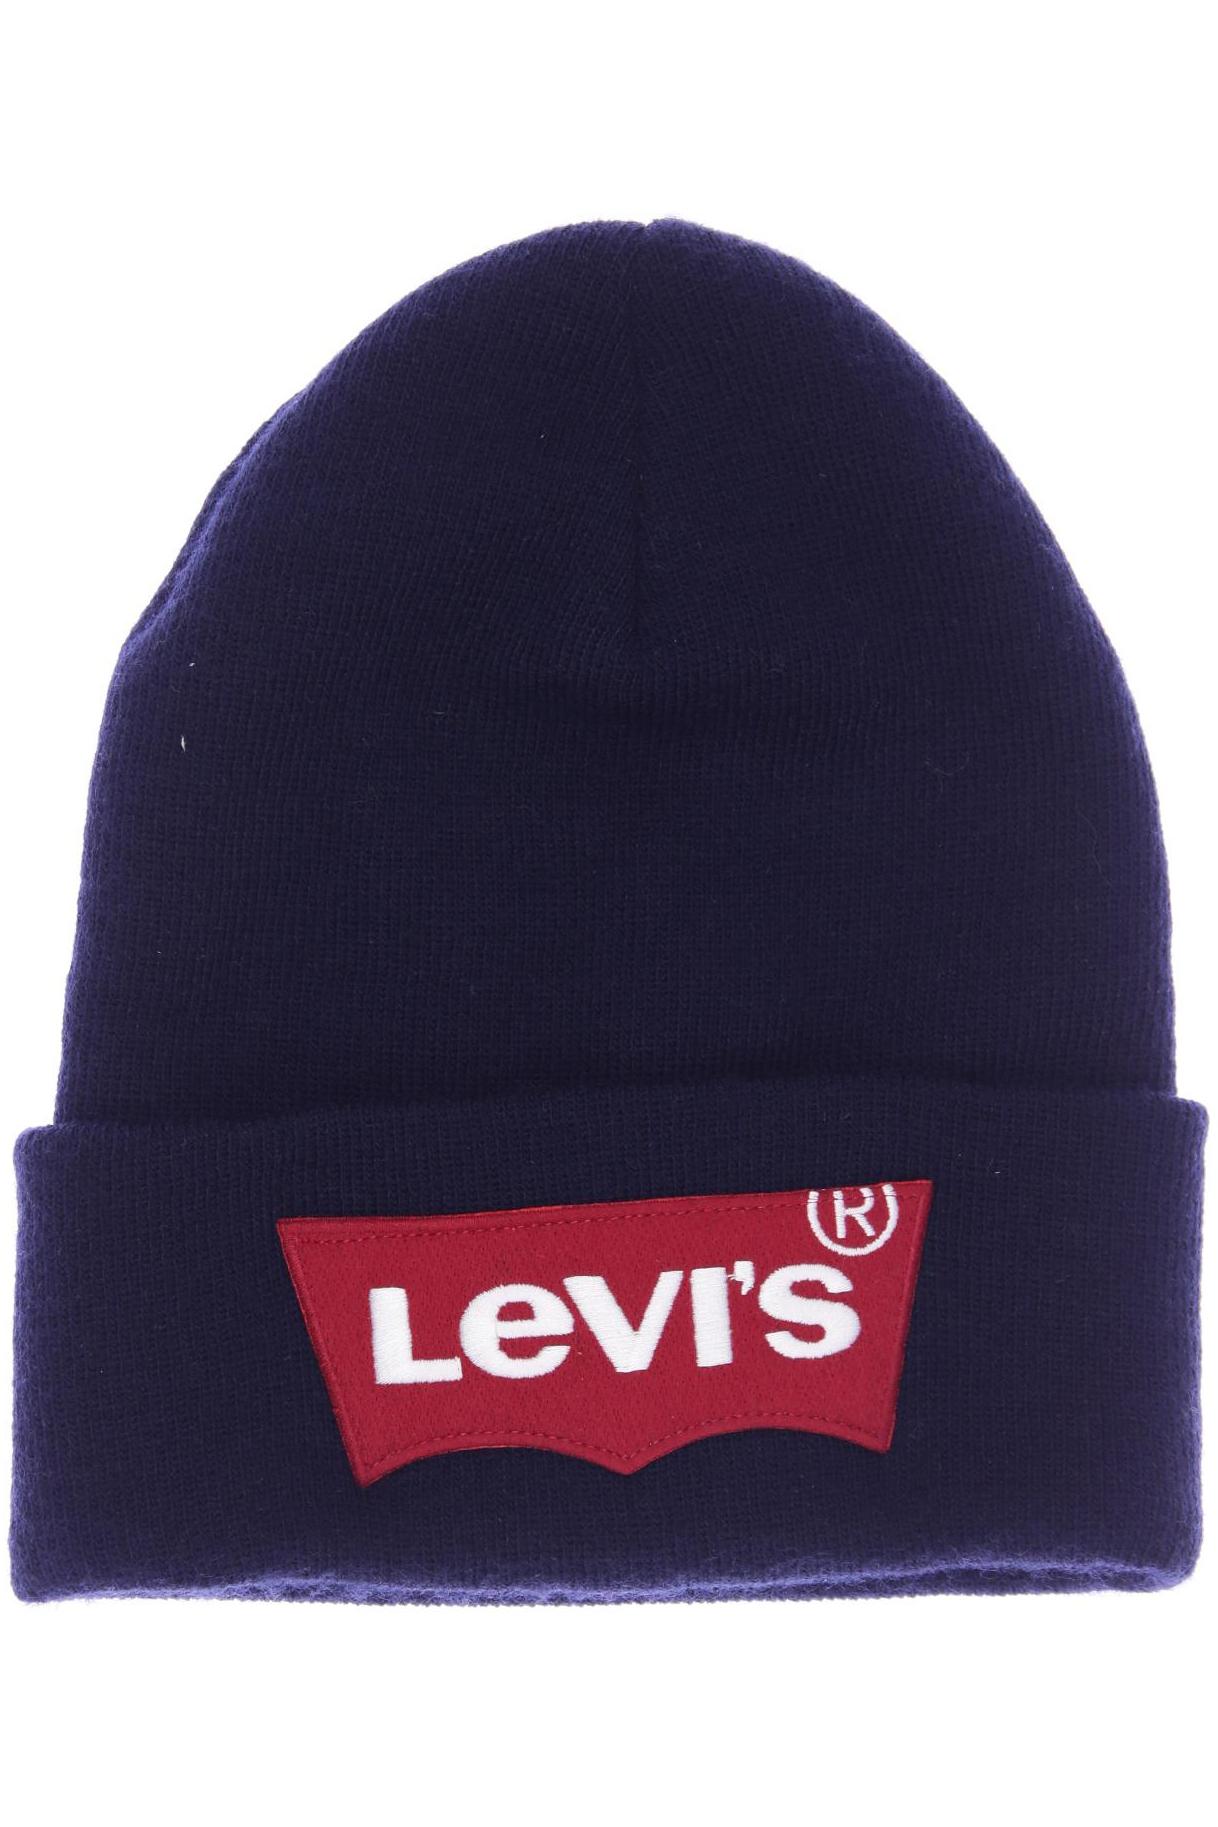 Levis Herren Hut/Mütze, marineblau von Levis